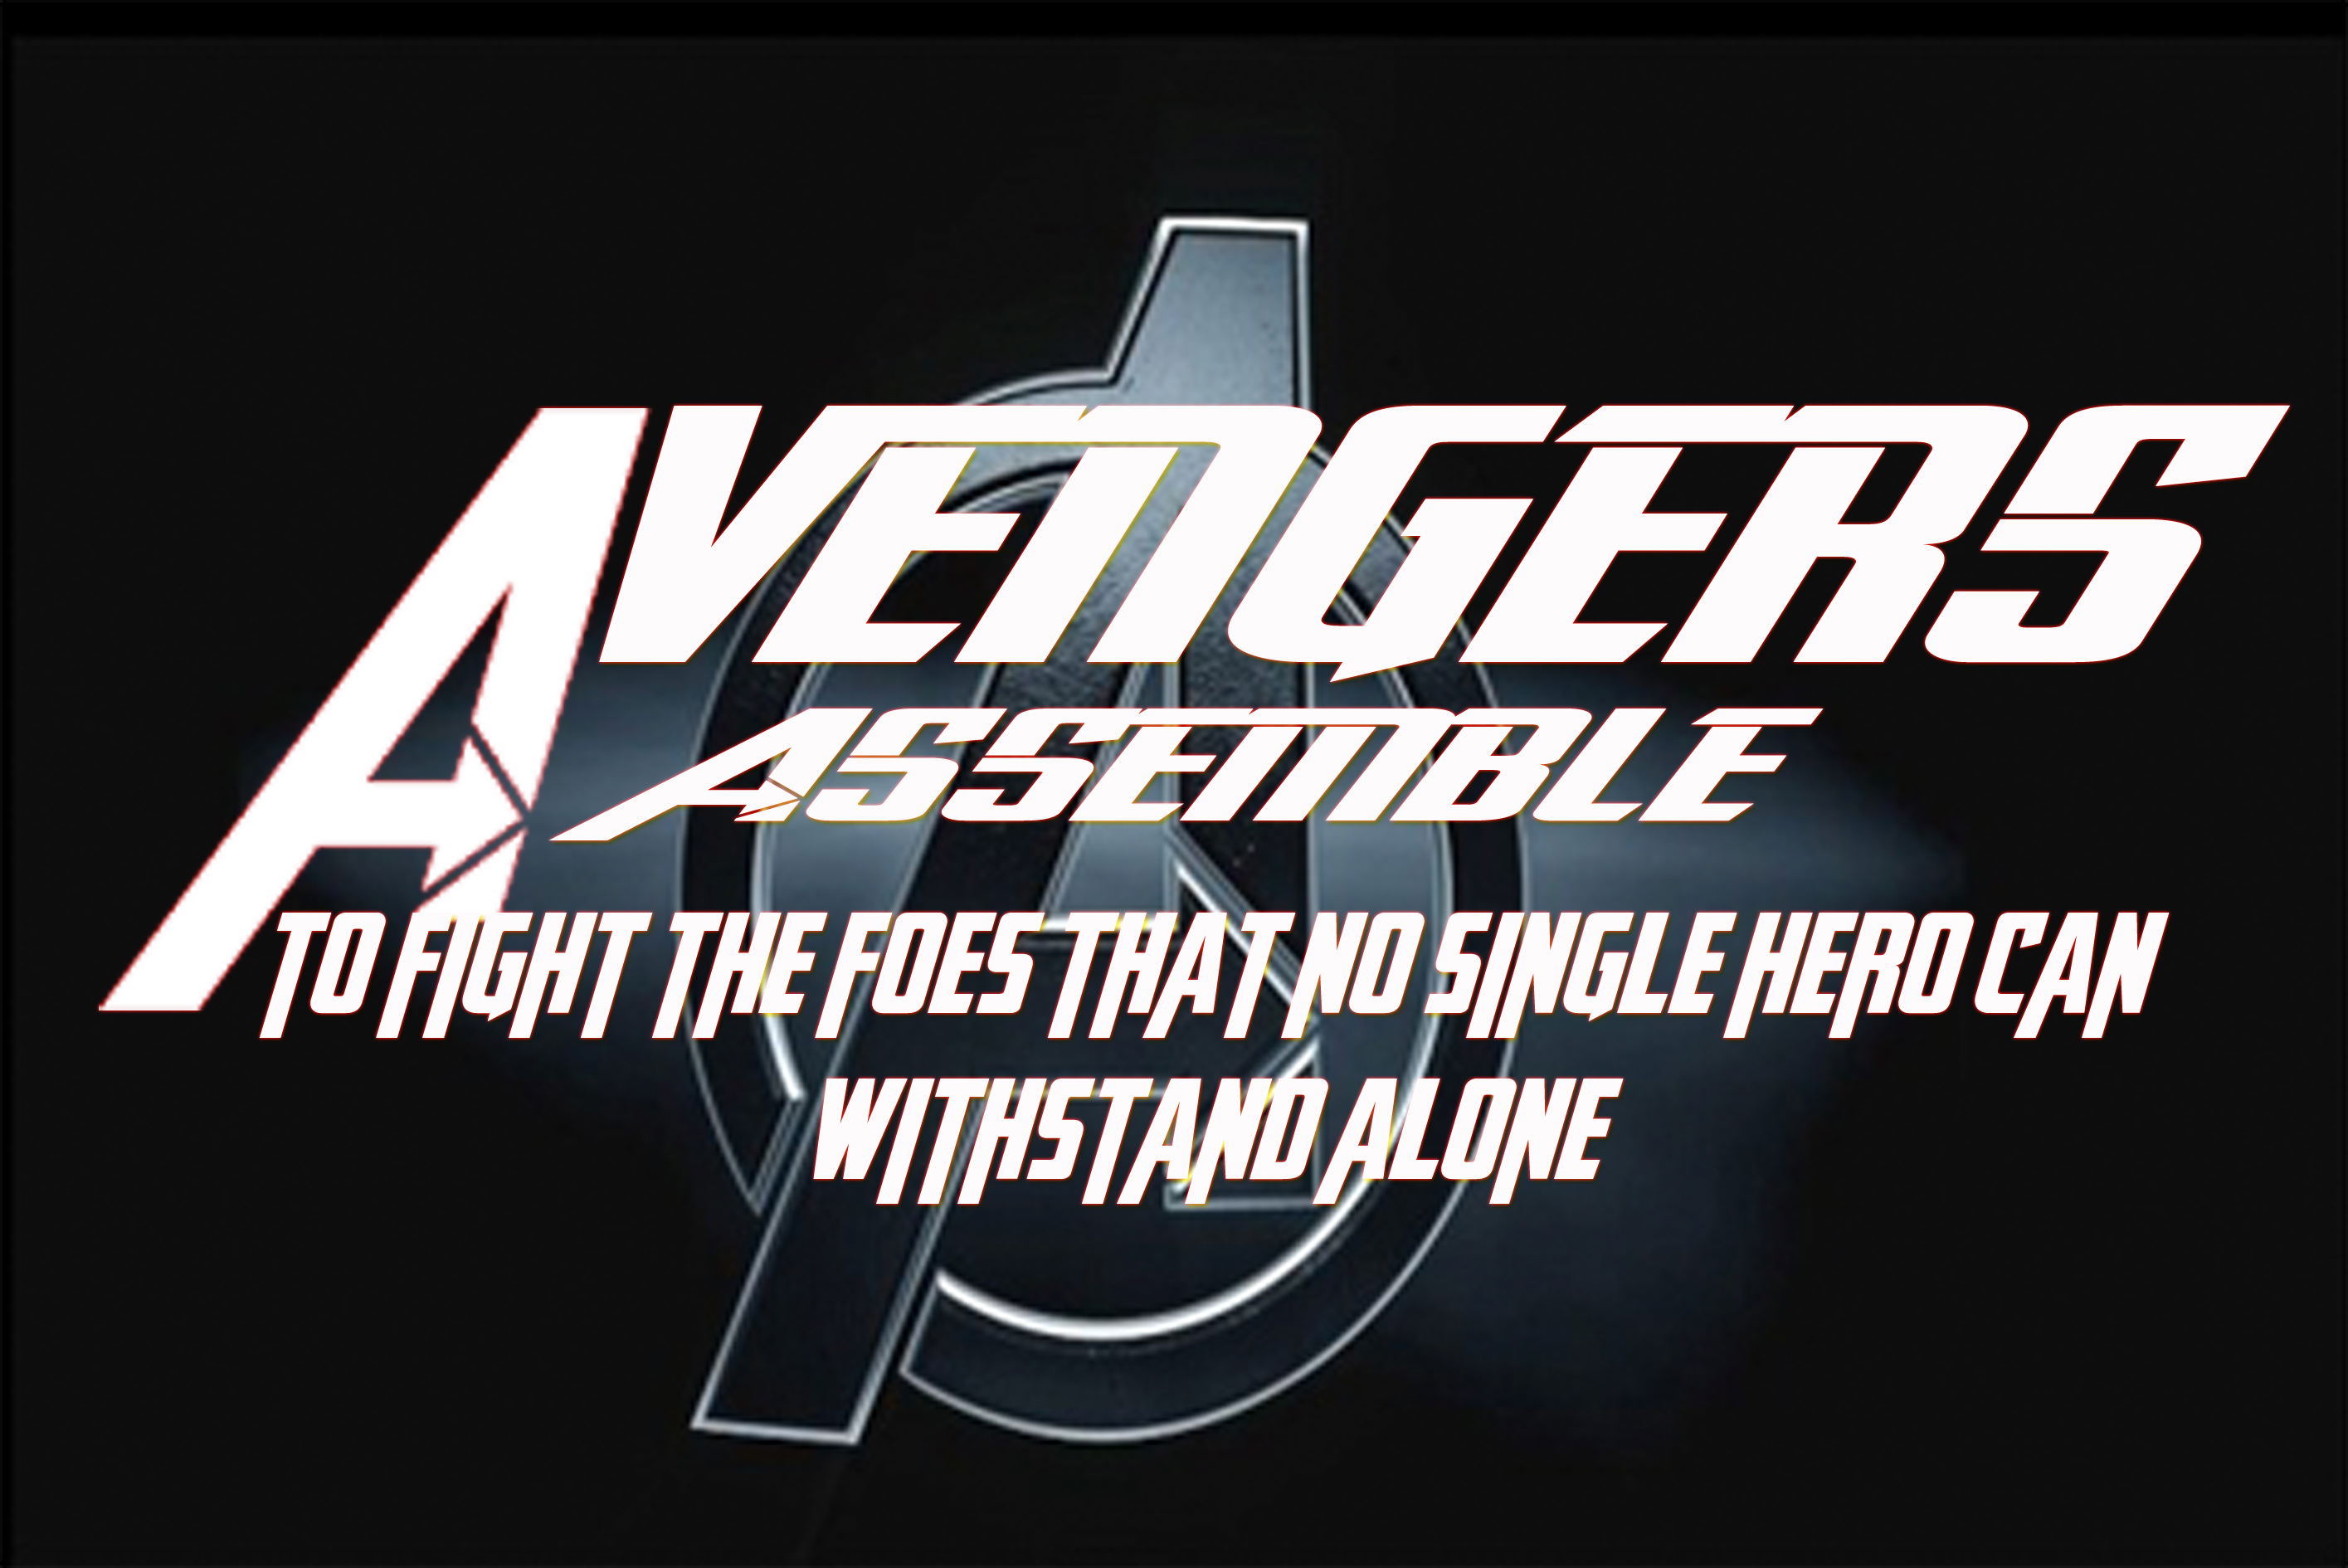 Avengers Assemble Part 2